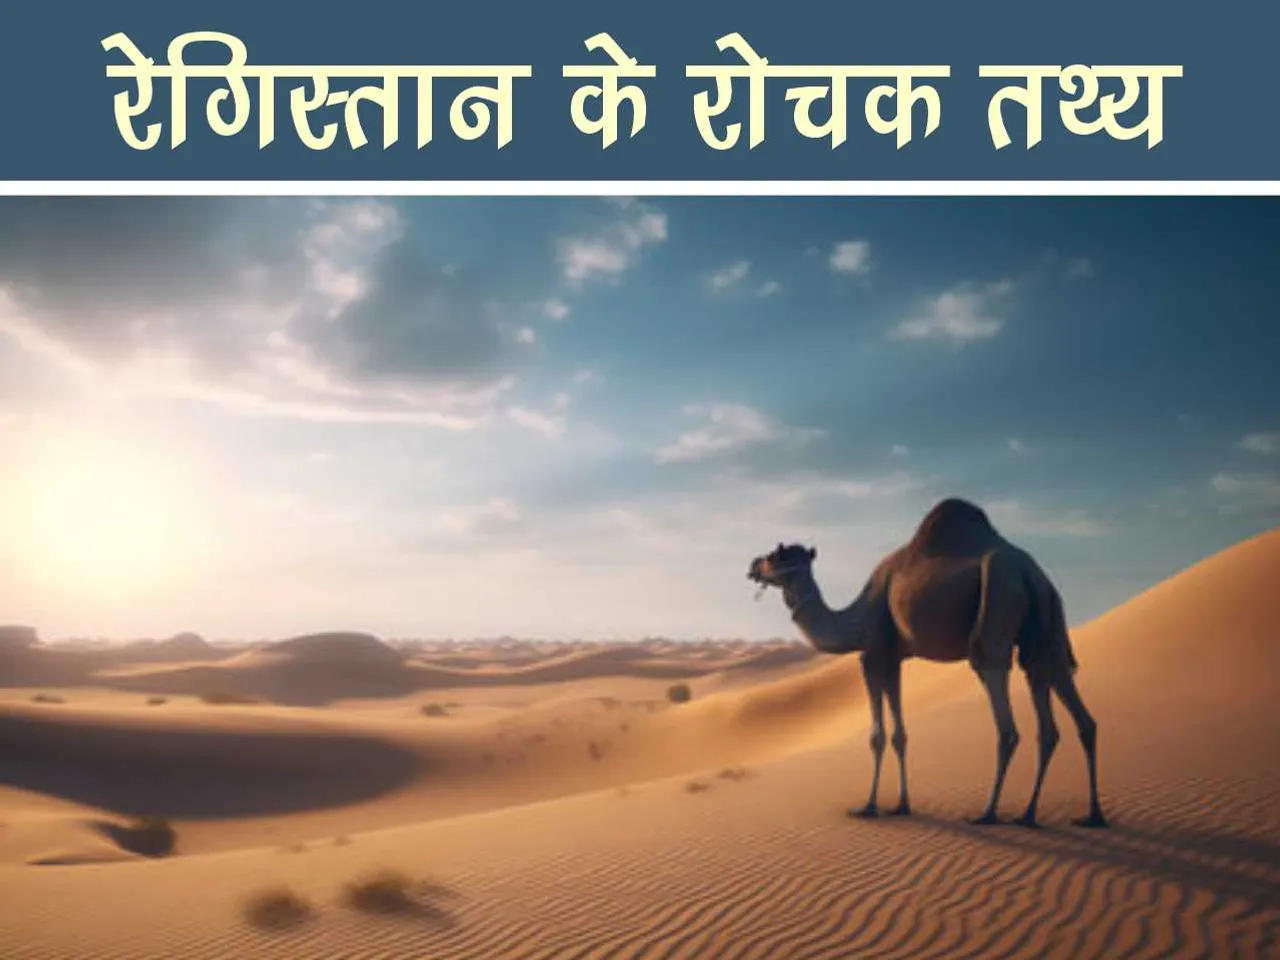 Camel in desert 